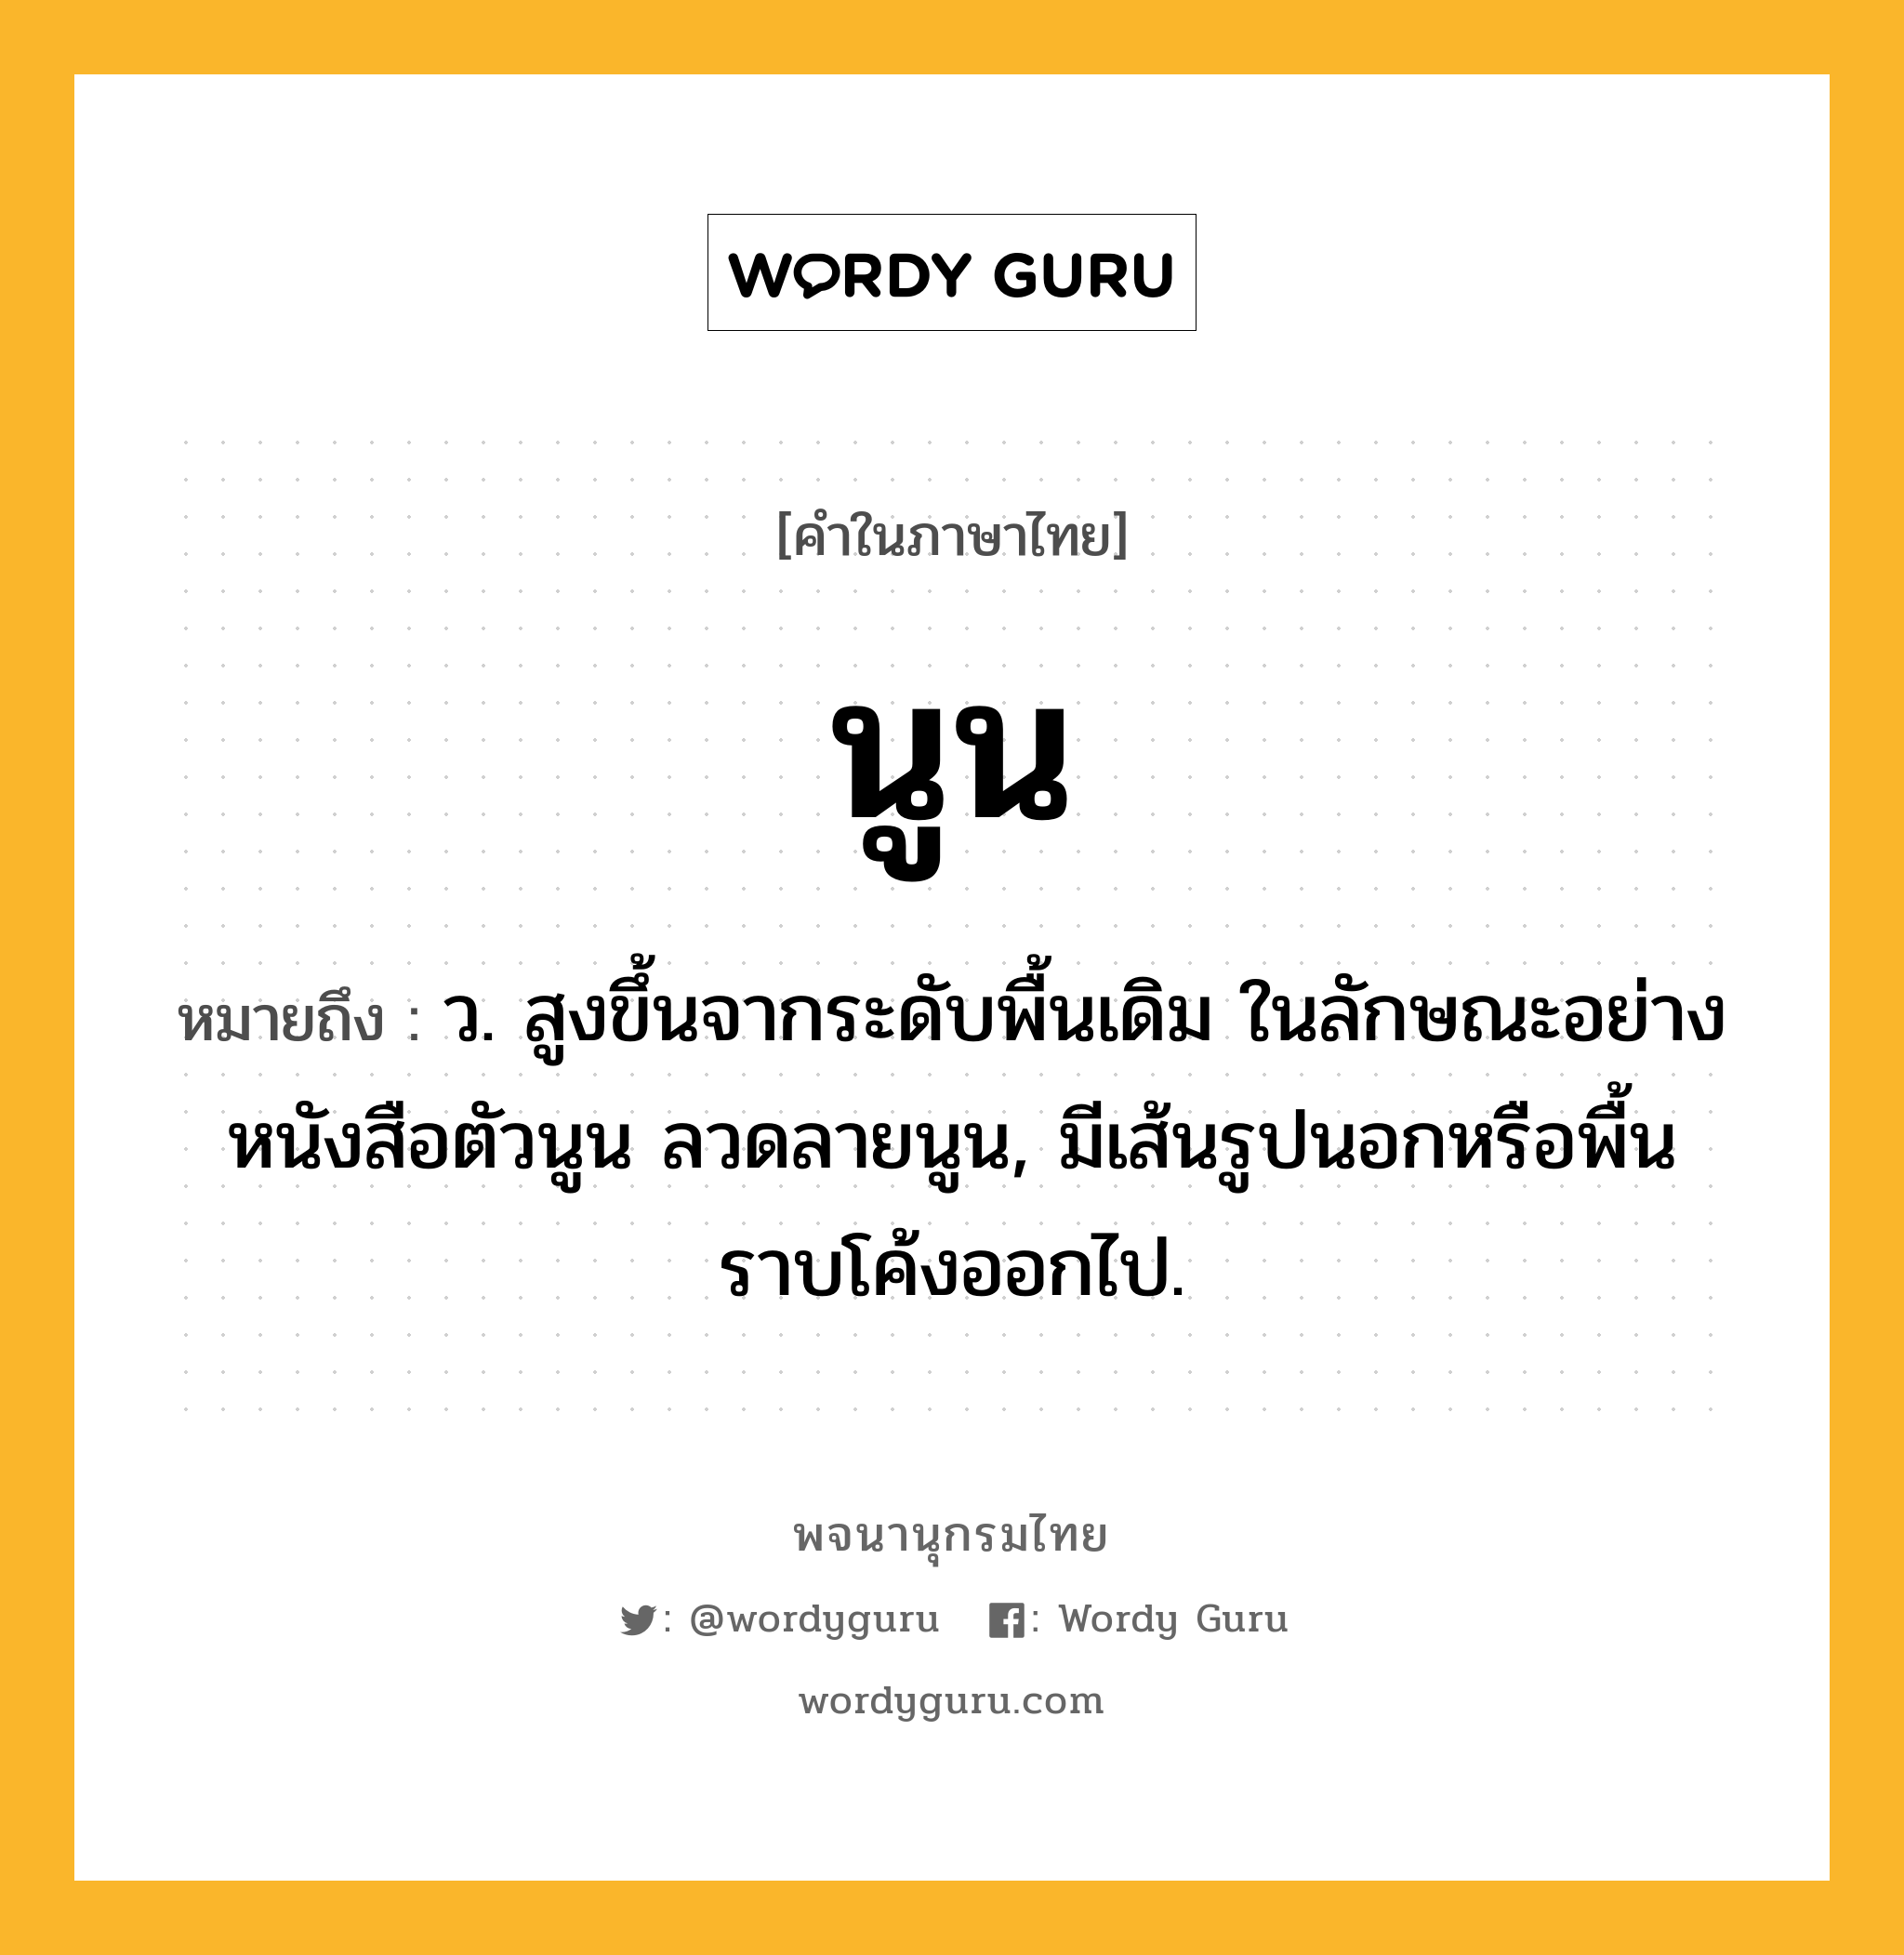 นูน ความหมาย หมายถึงอะไร?, คำในภาษาไทย นูน หมายถึง ว. สูงขึ้นจากระดับพื้นเดิม ในลักษณะอย่างหนังสือตัวนูน ลวดลายนูน, มีเส้นรูปนอกหรือพื้นราบโค้งออกไป.